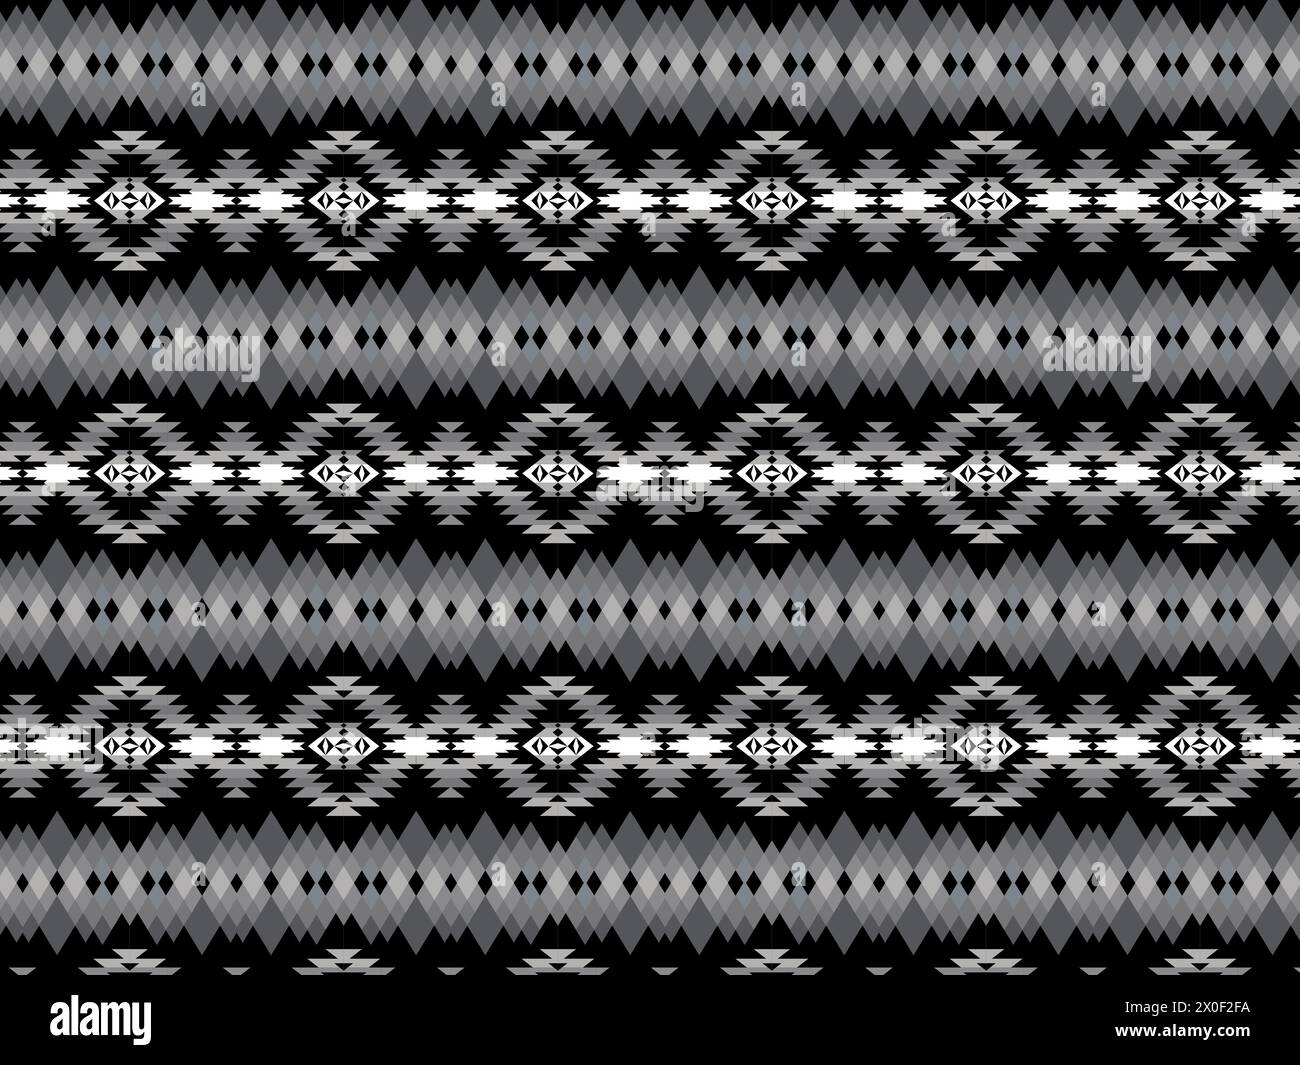 Negro Navajo patrón sin fisuras. Patrón geométrico tribal nativo americano tradicional del suroeste. Ilustración del Vector